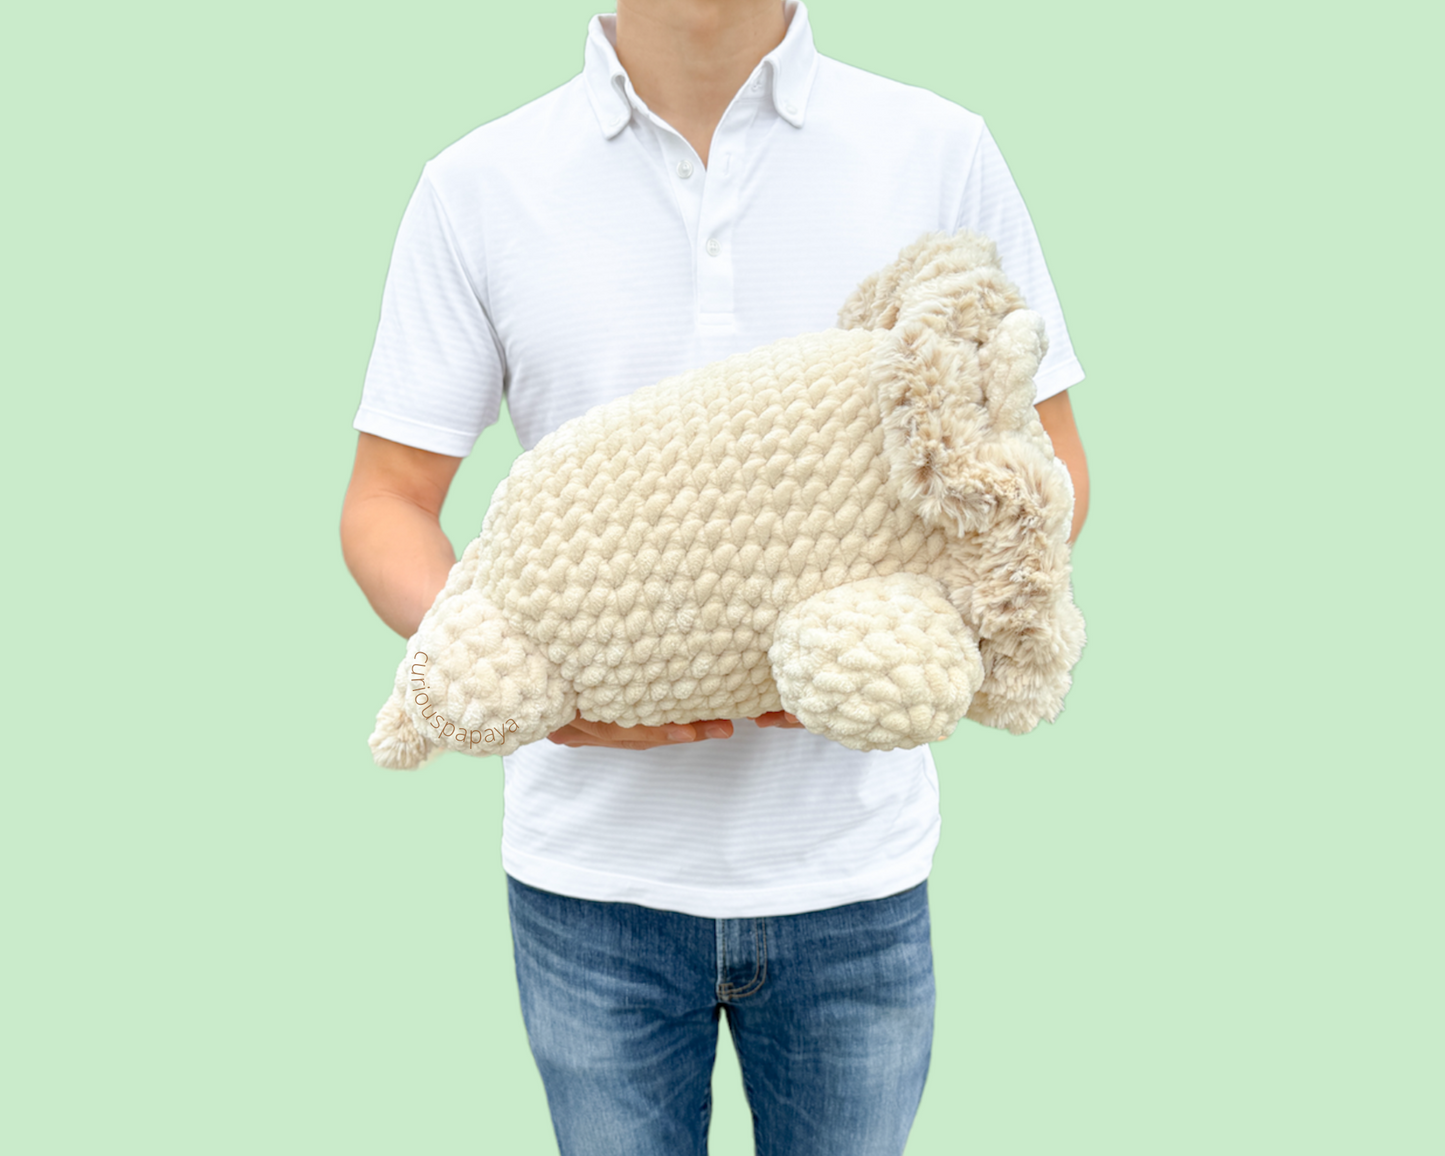 Giant Lion Crochet Pattern